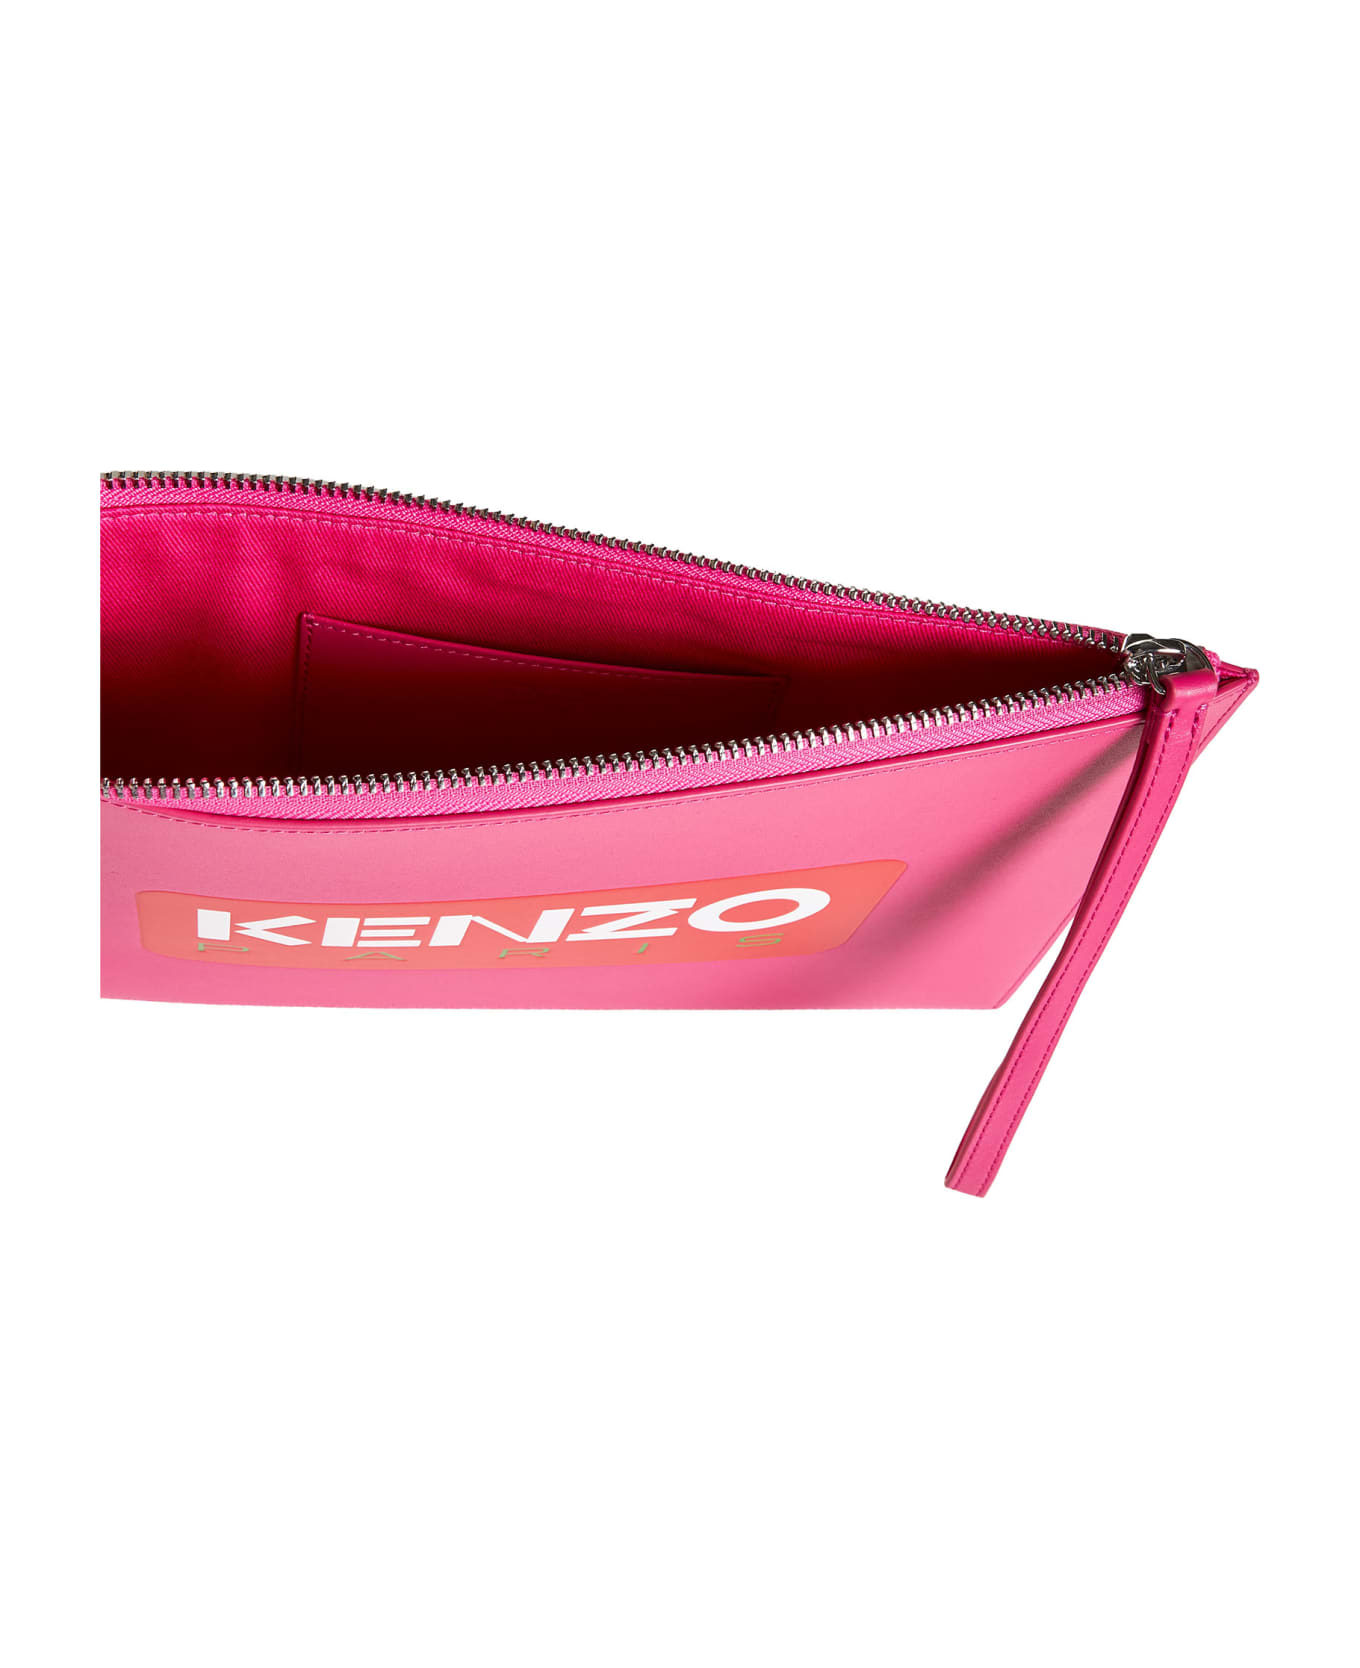 Kenzo Clutch Bag - Deep fuschia